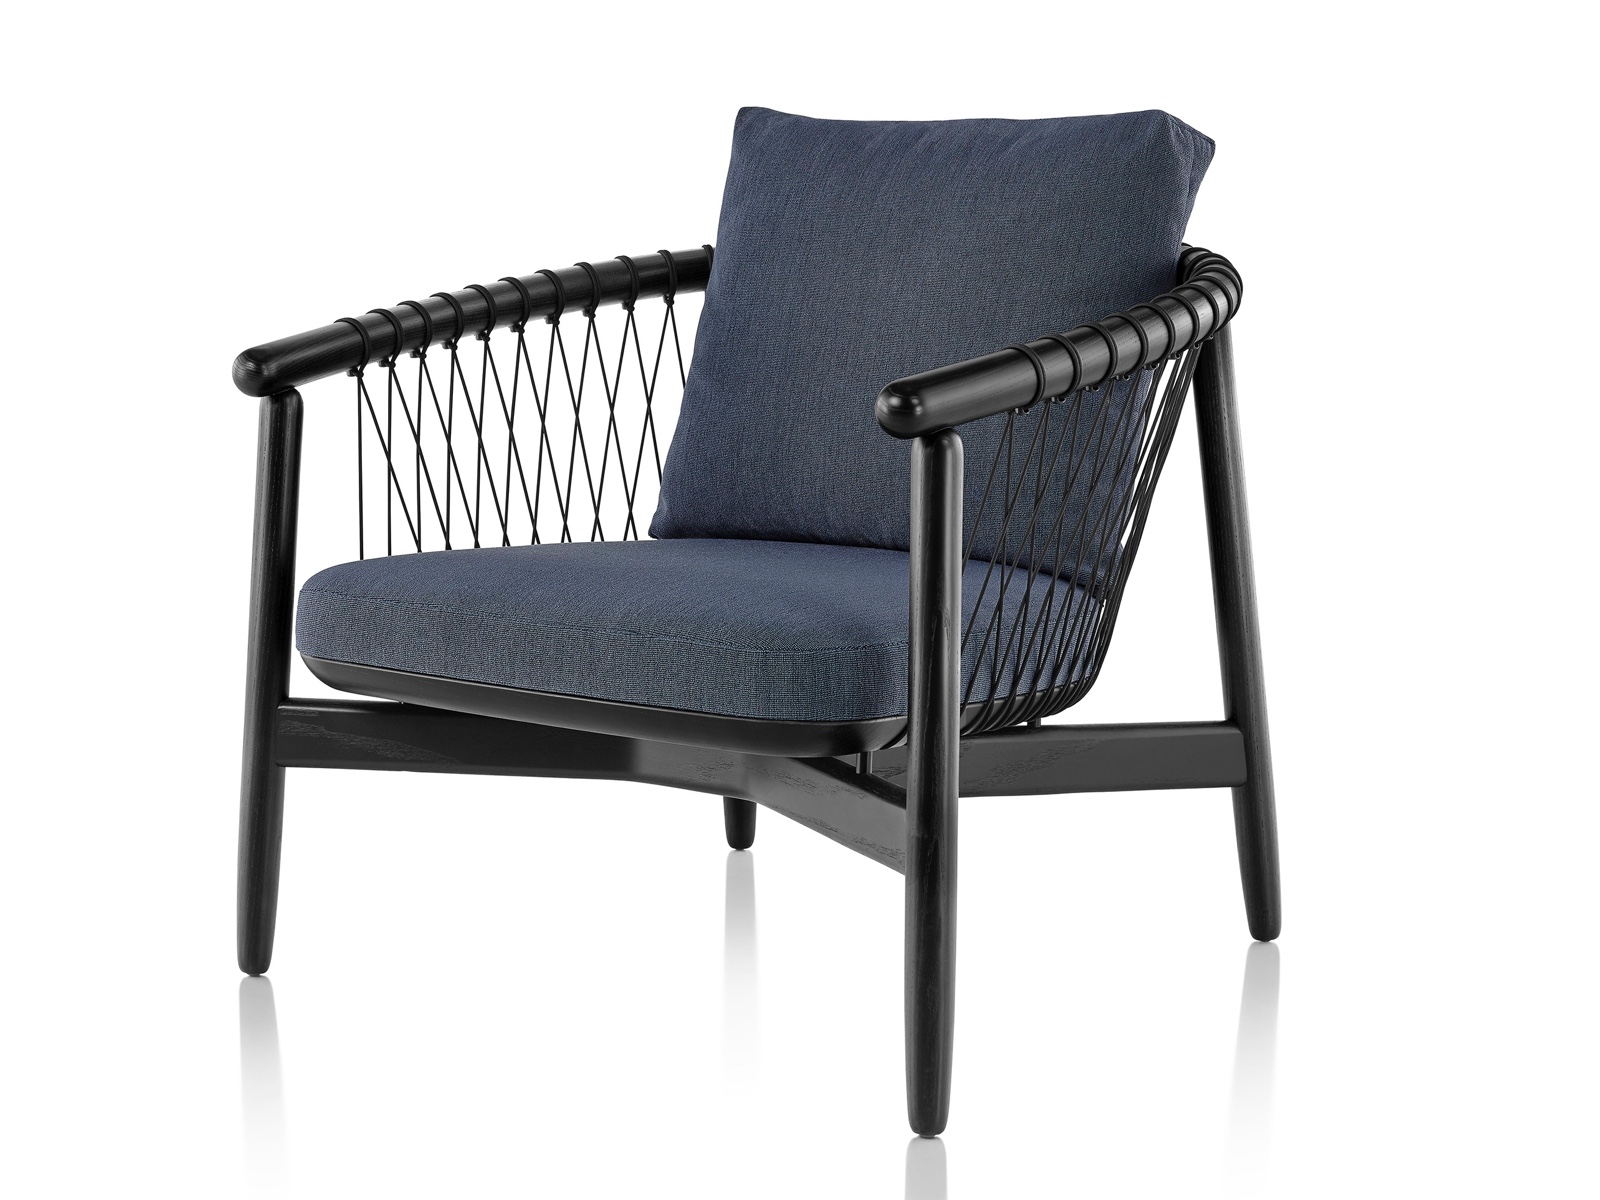 Marineblau gepolsterter Crosshatch Chair mit schwarzem Holzgestell, von vorne schräg betrachtet.